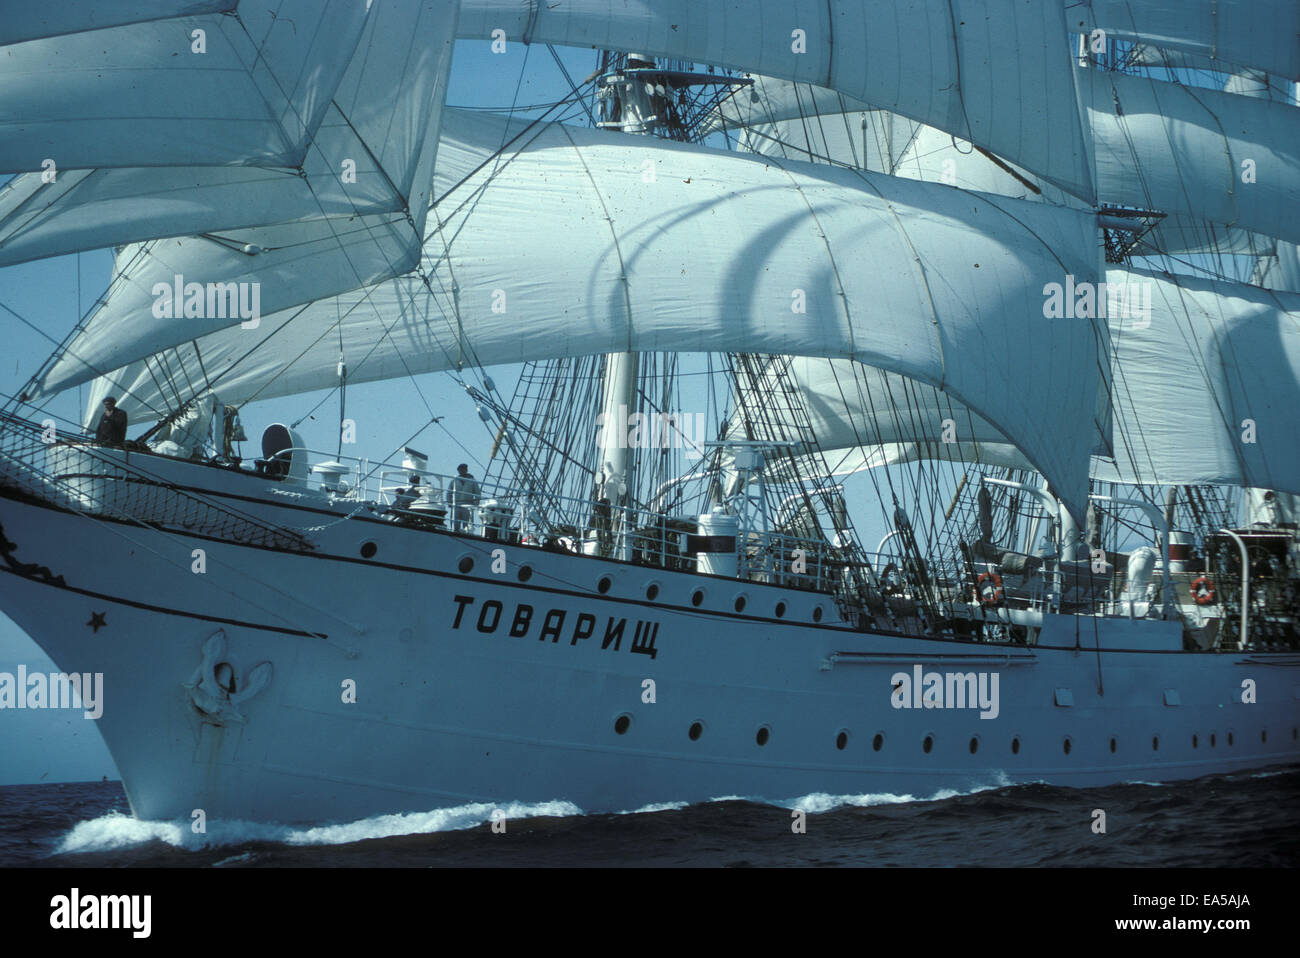 Urss maintenant grand voilier russe Tovarishch ( le camarade ) Mai 1976 toutes voiles dehors. Rebaptisée Gorch Fock Nov 2014 Banque D'Images